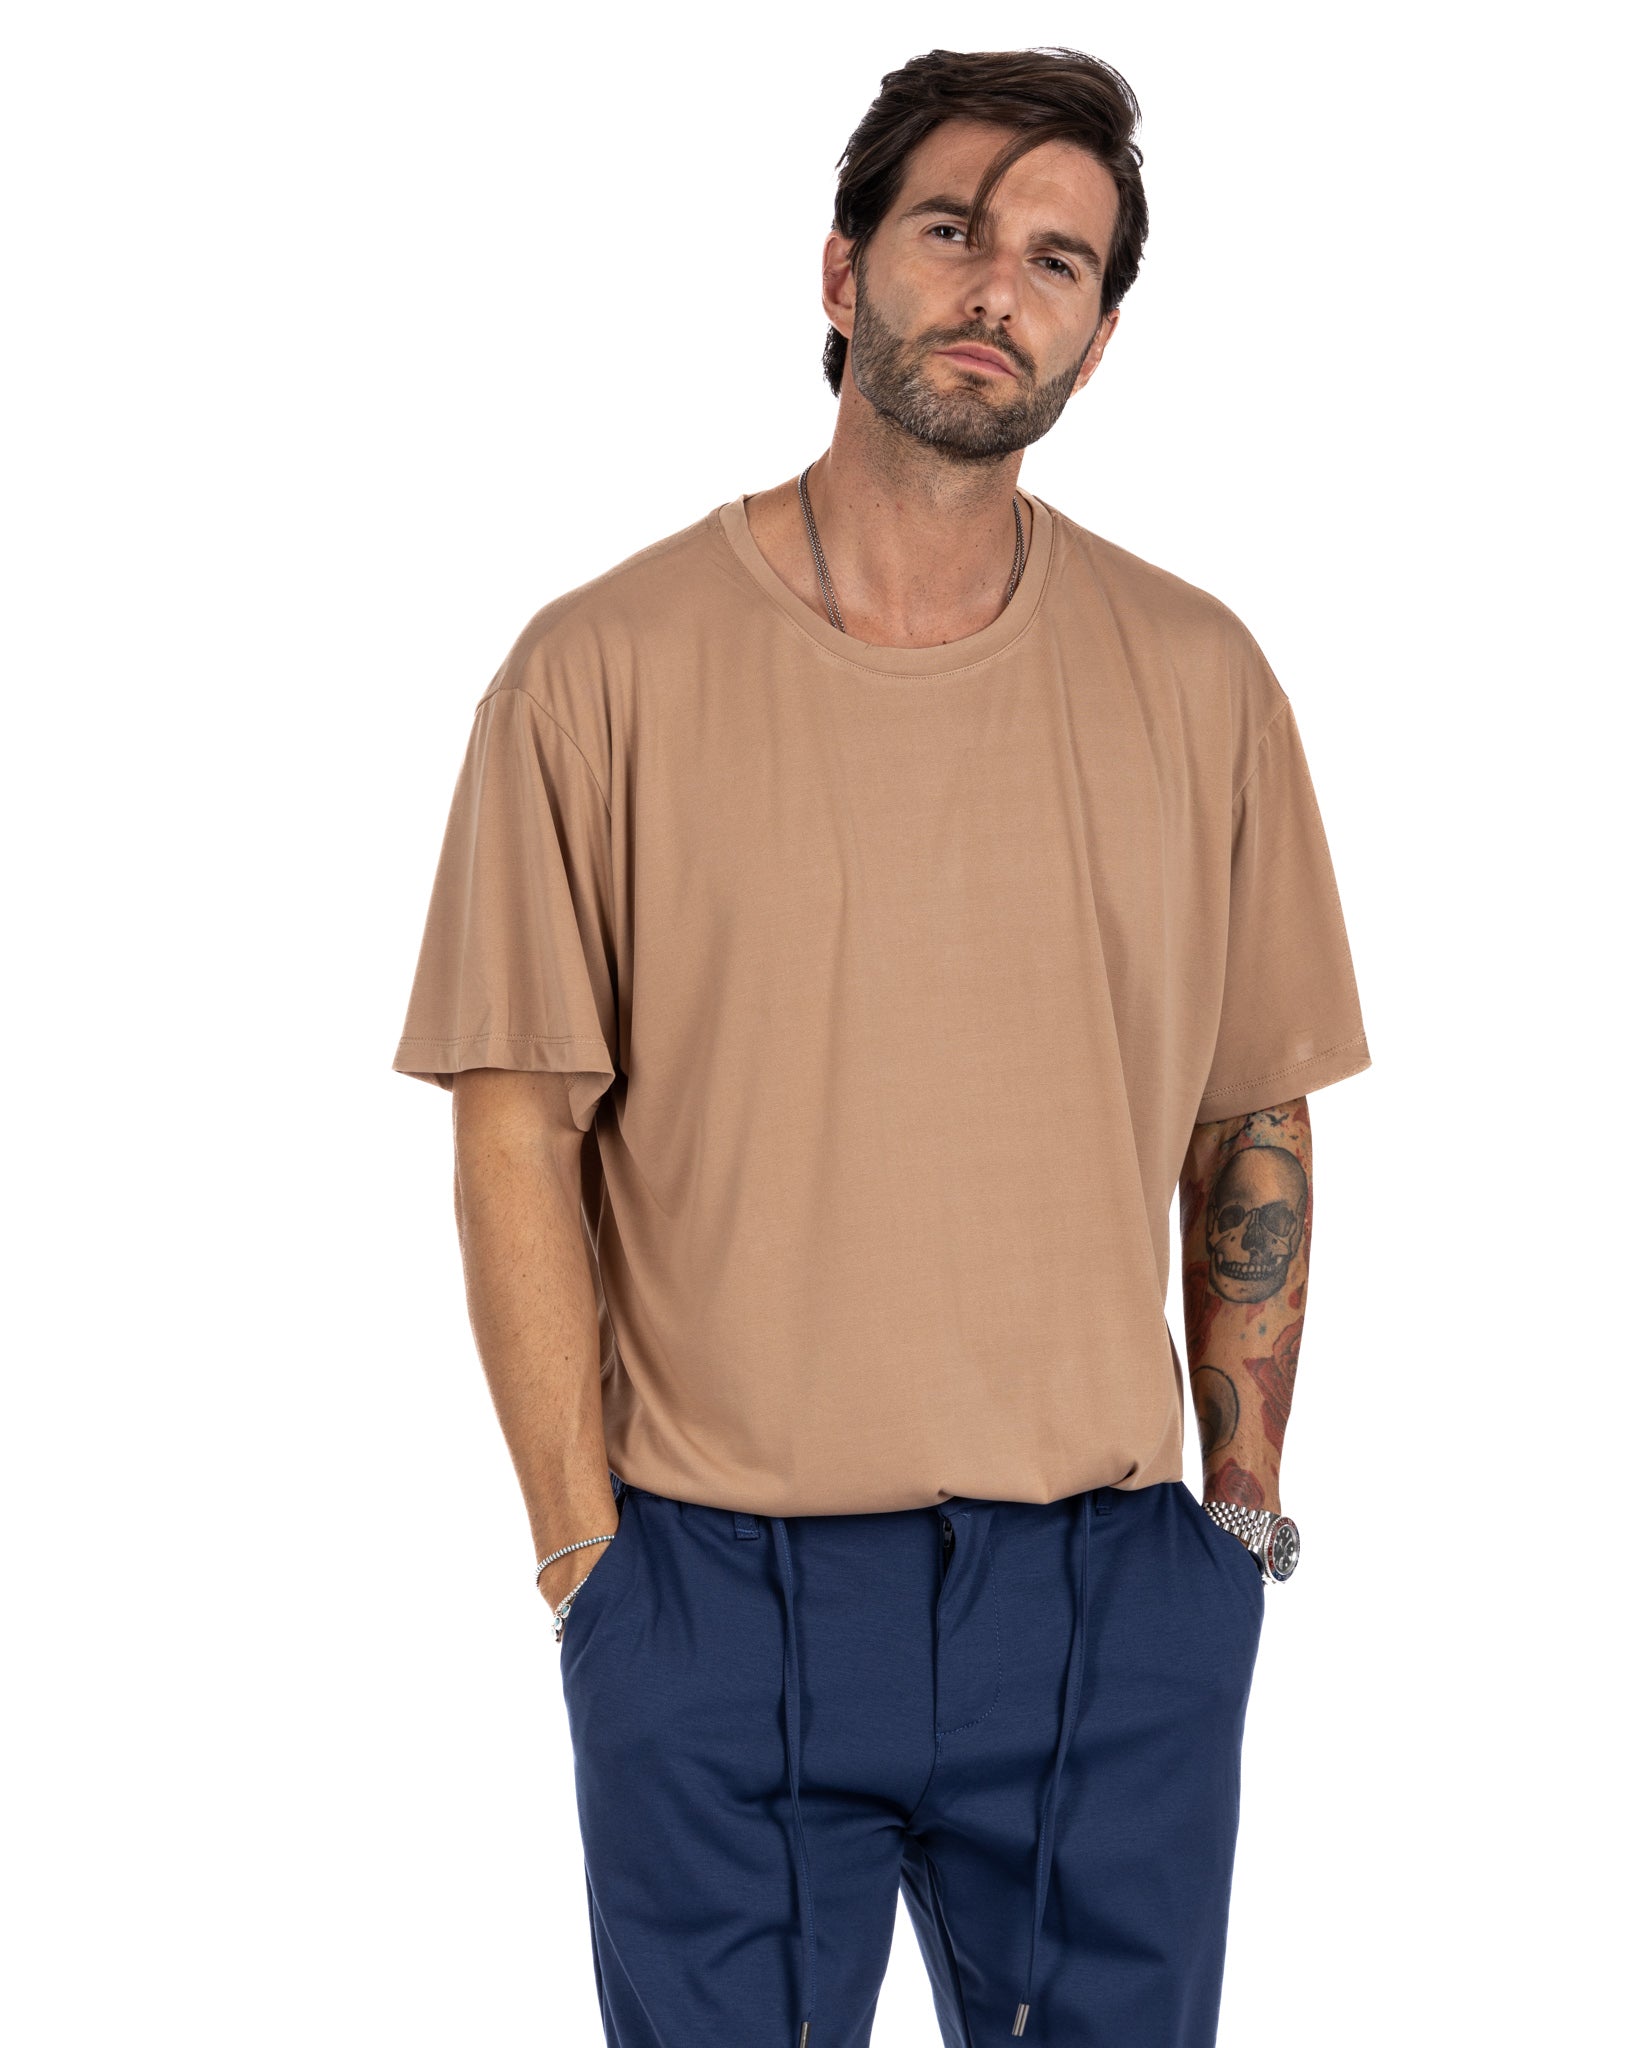 Owen - t-shirt beige oversize